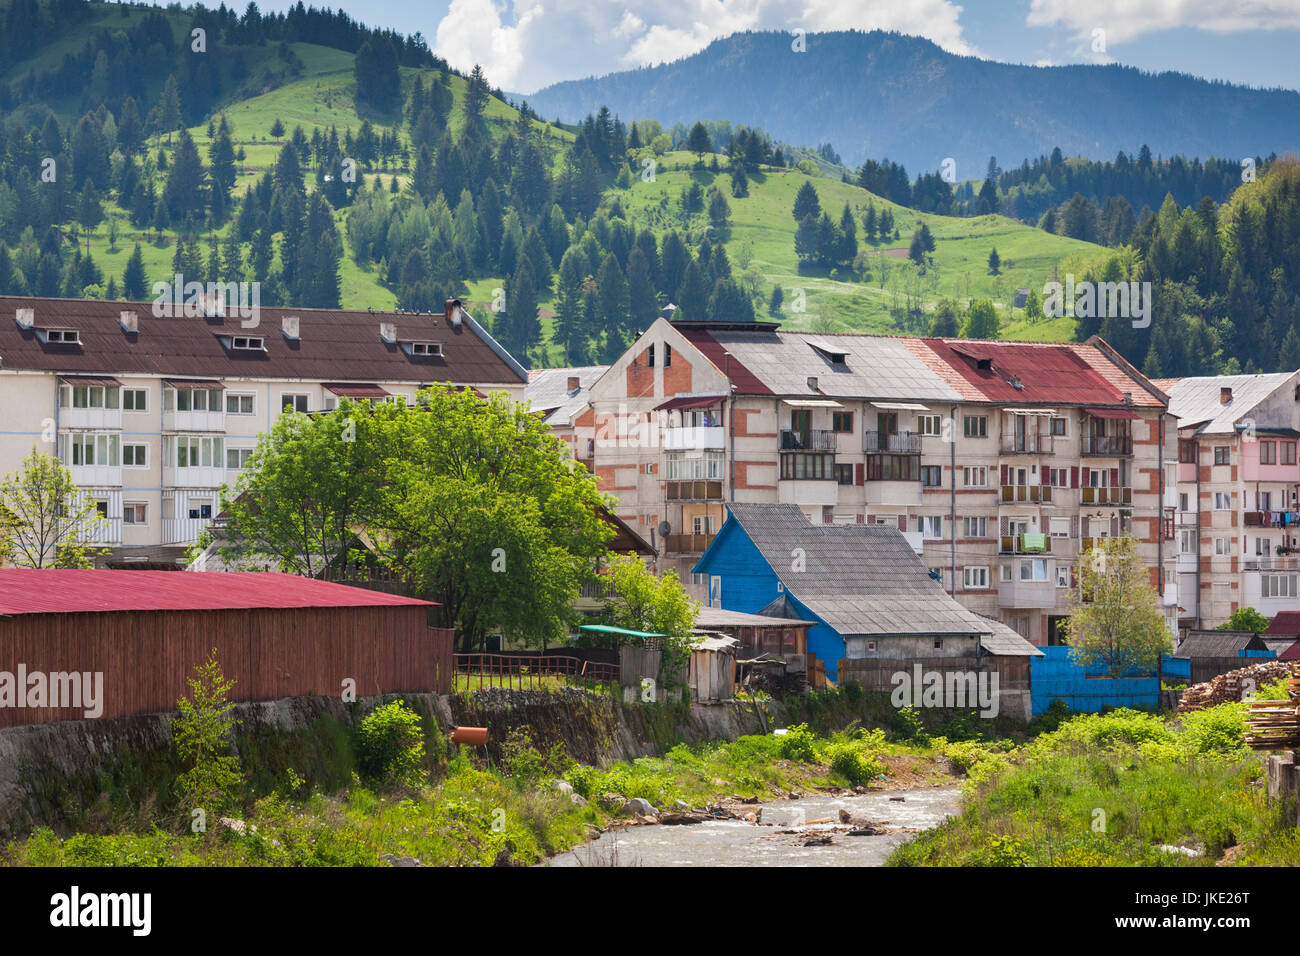 Romania, Maramures Region, Borsa, town view Stock Photo - Alamy